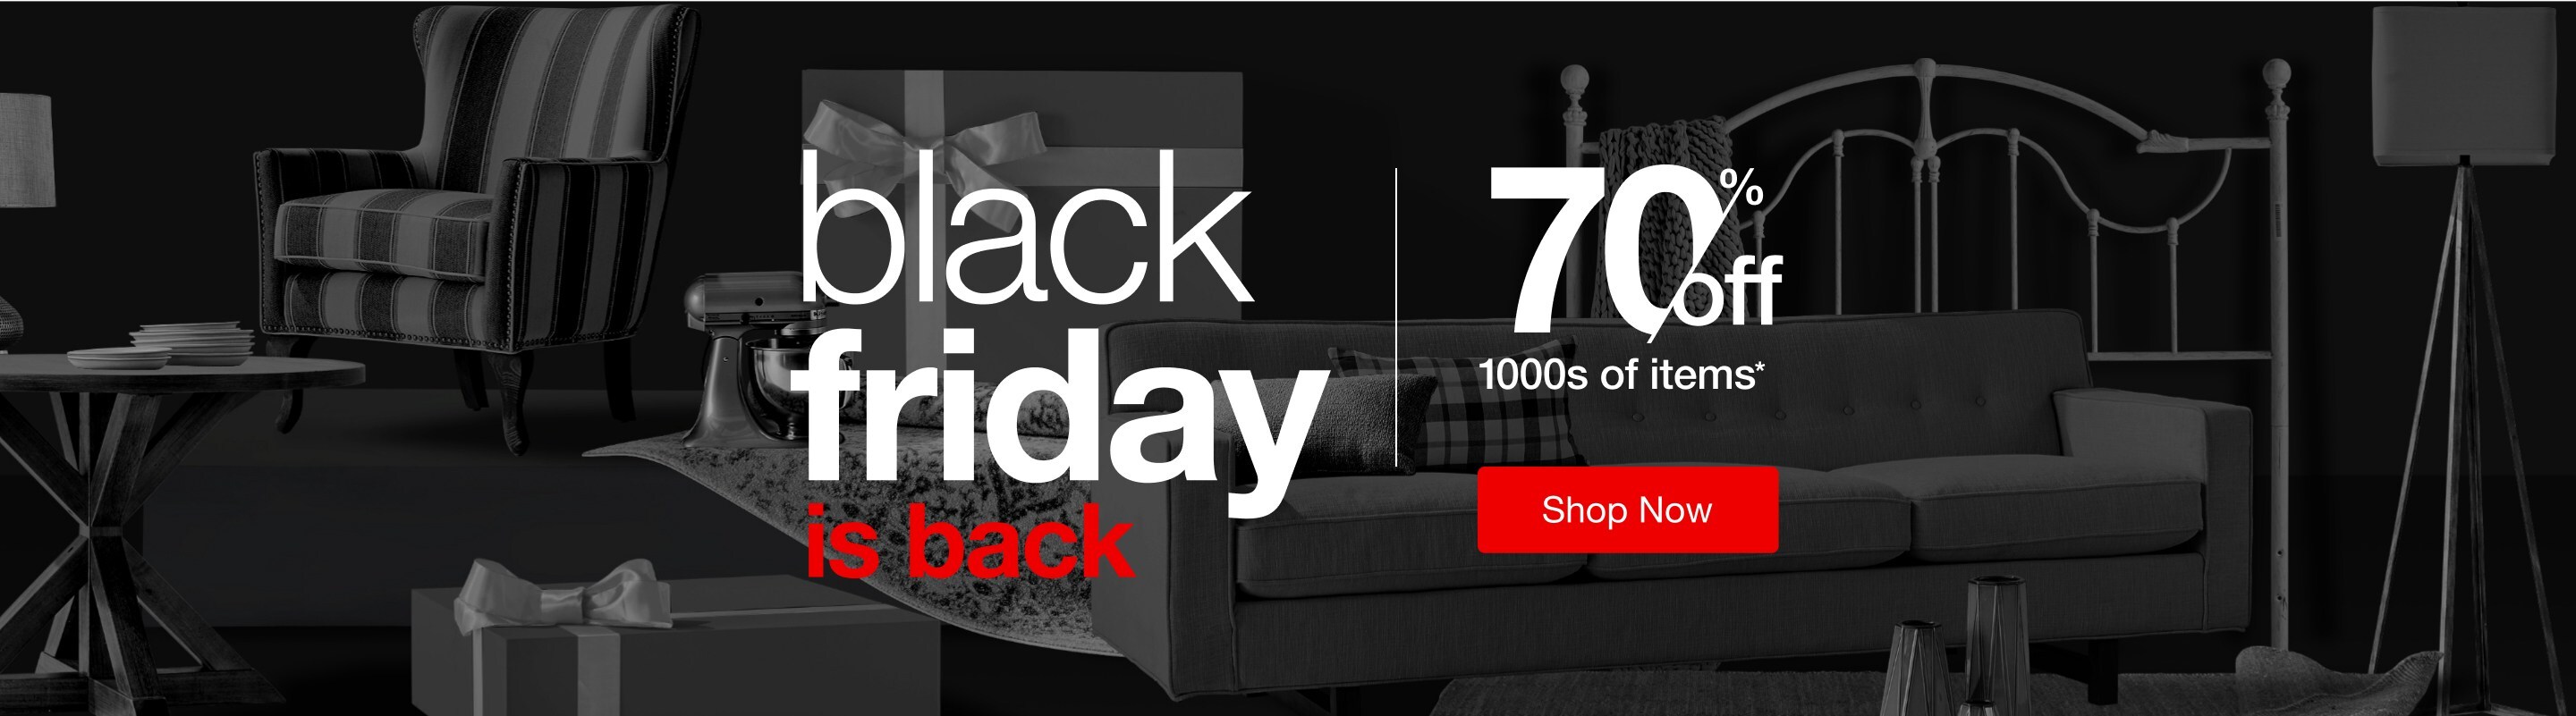 Black Friday is Back Sales & Deals